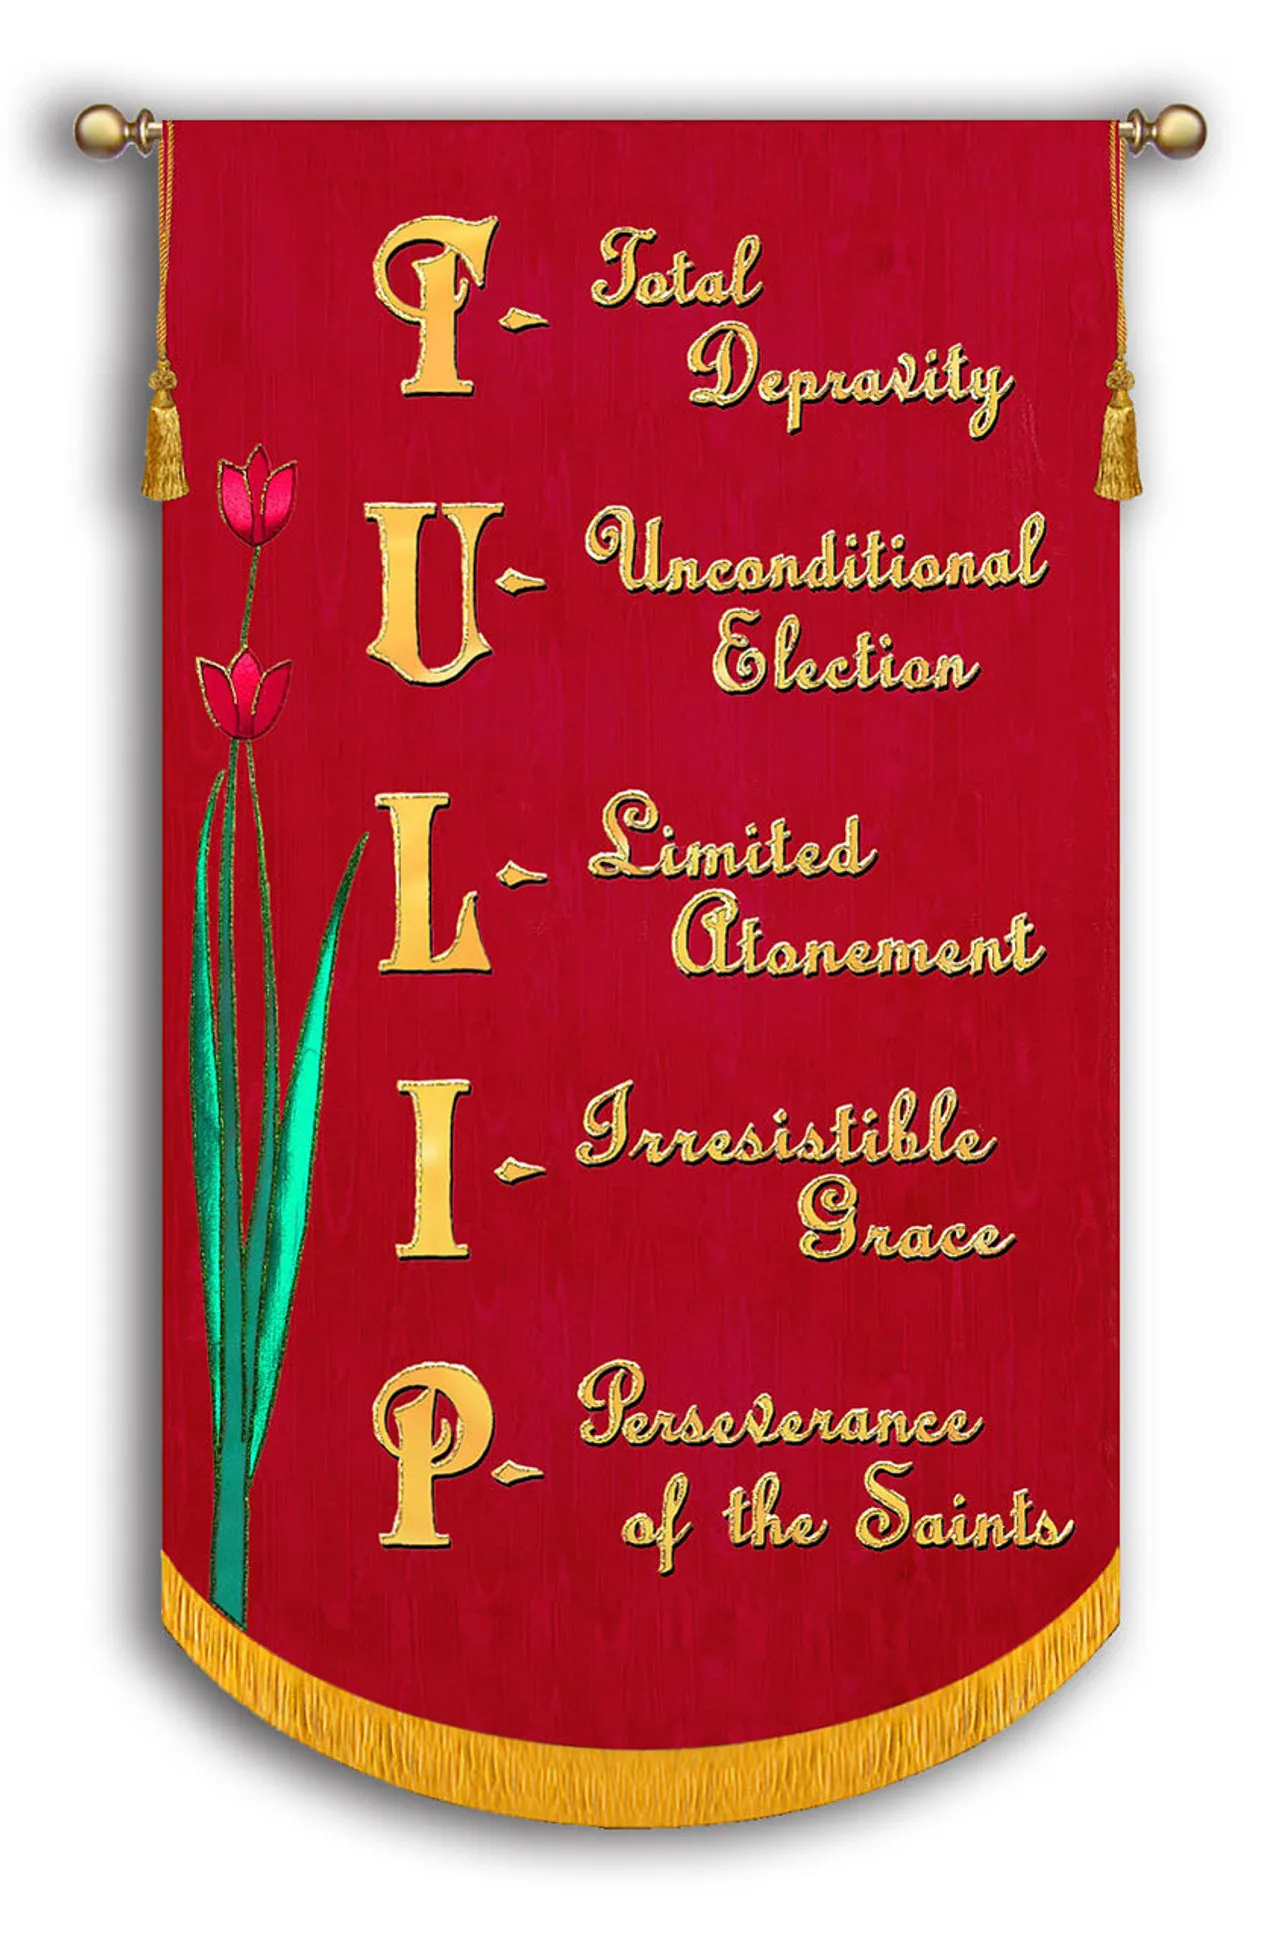 tulip of calvinism